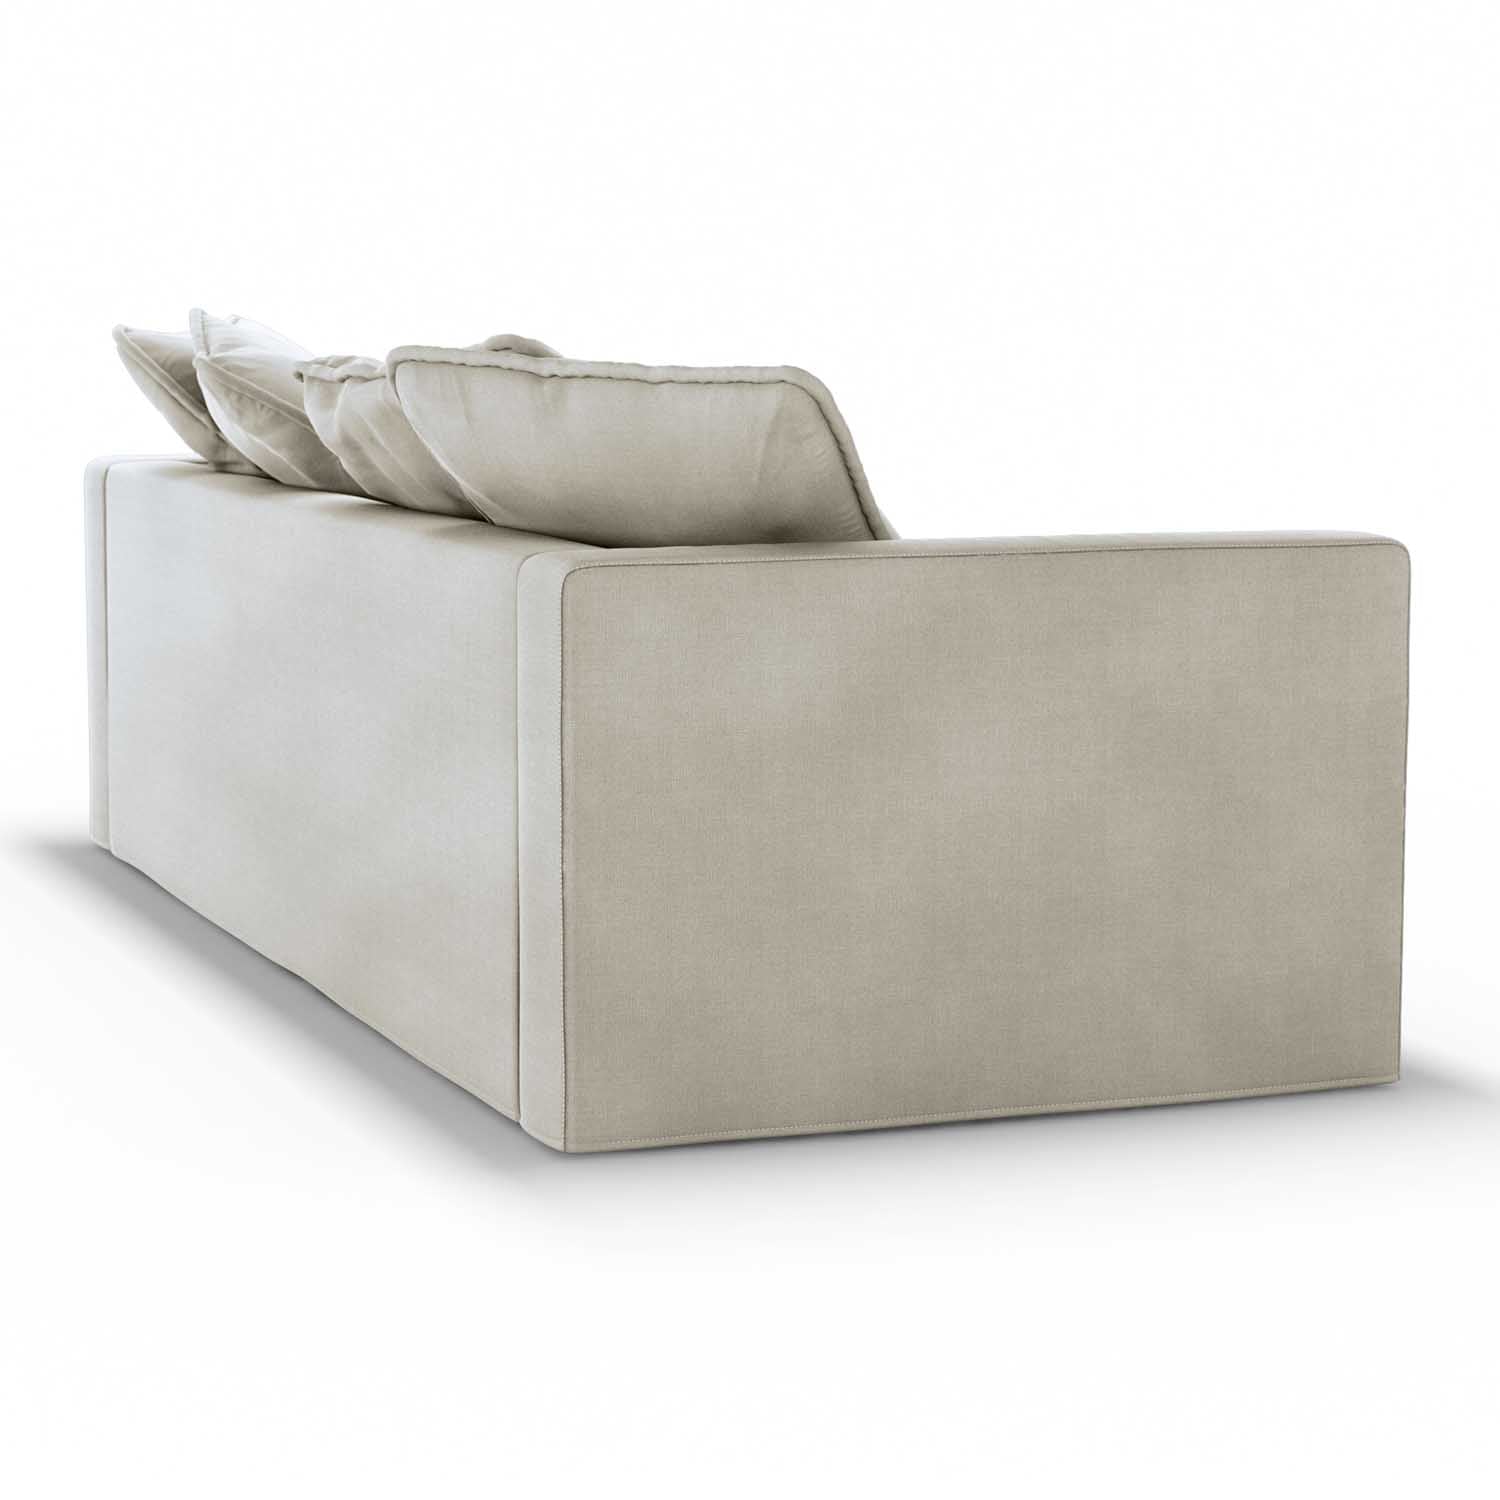 Modern Revival Style, cream cotton sofa backview